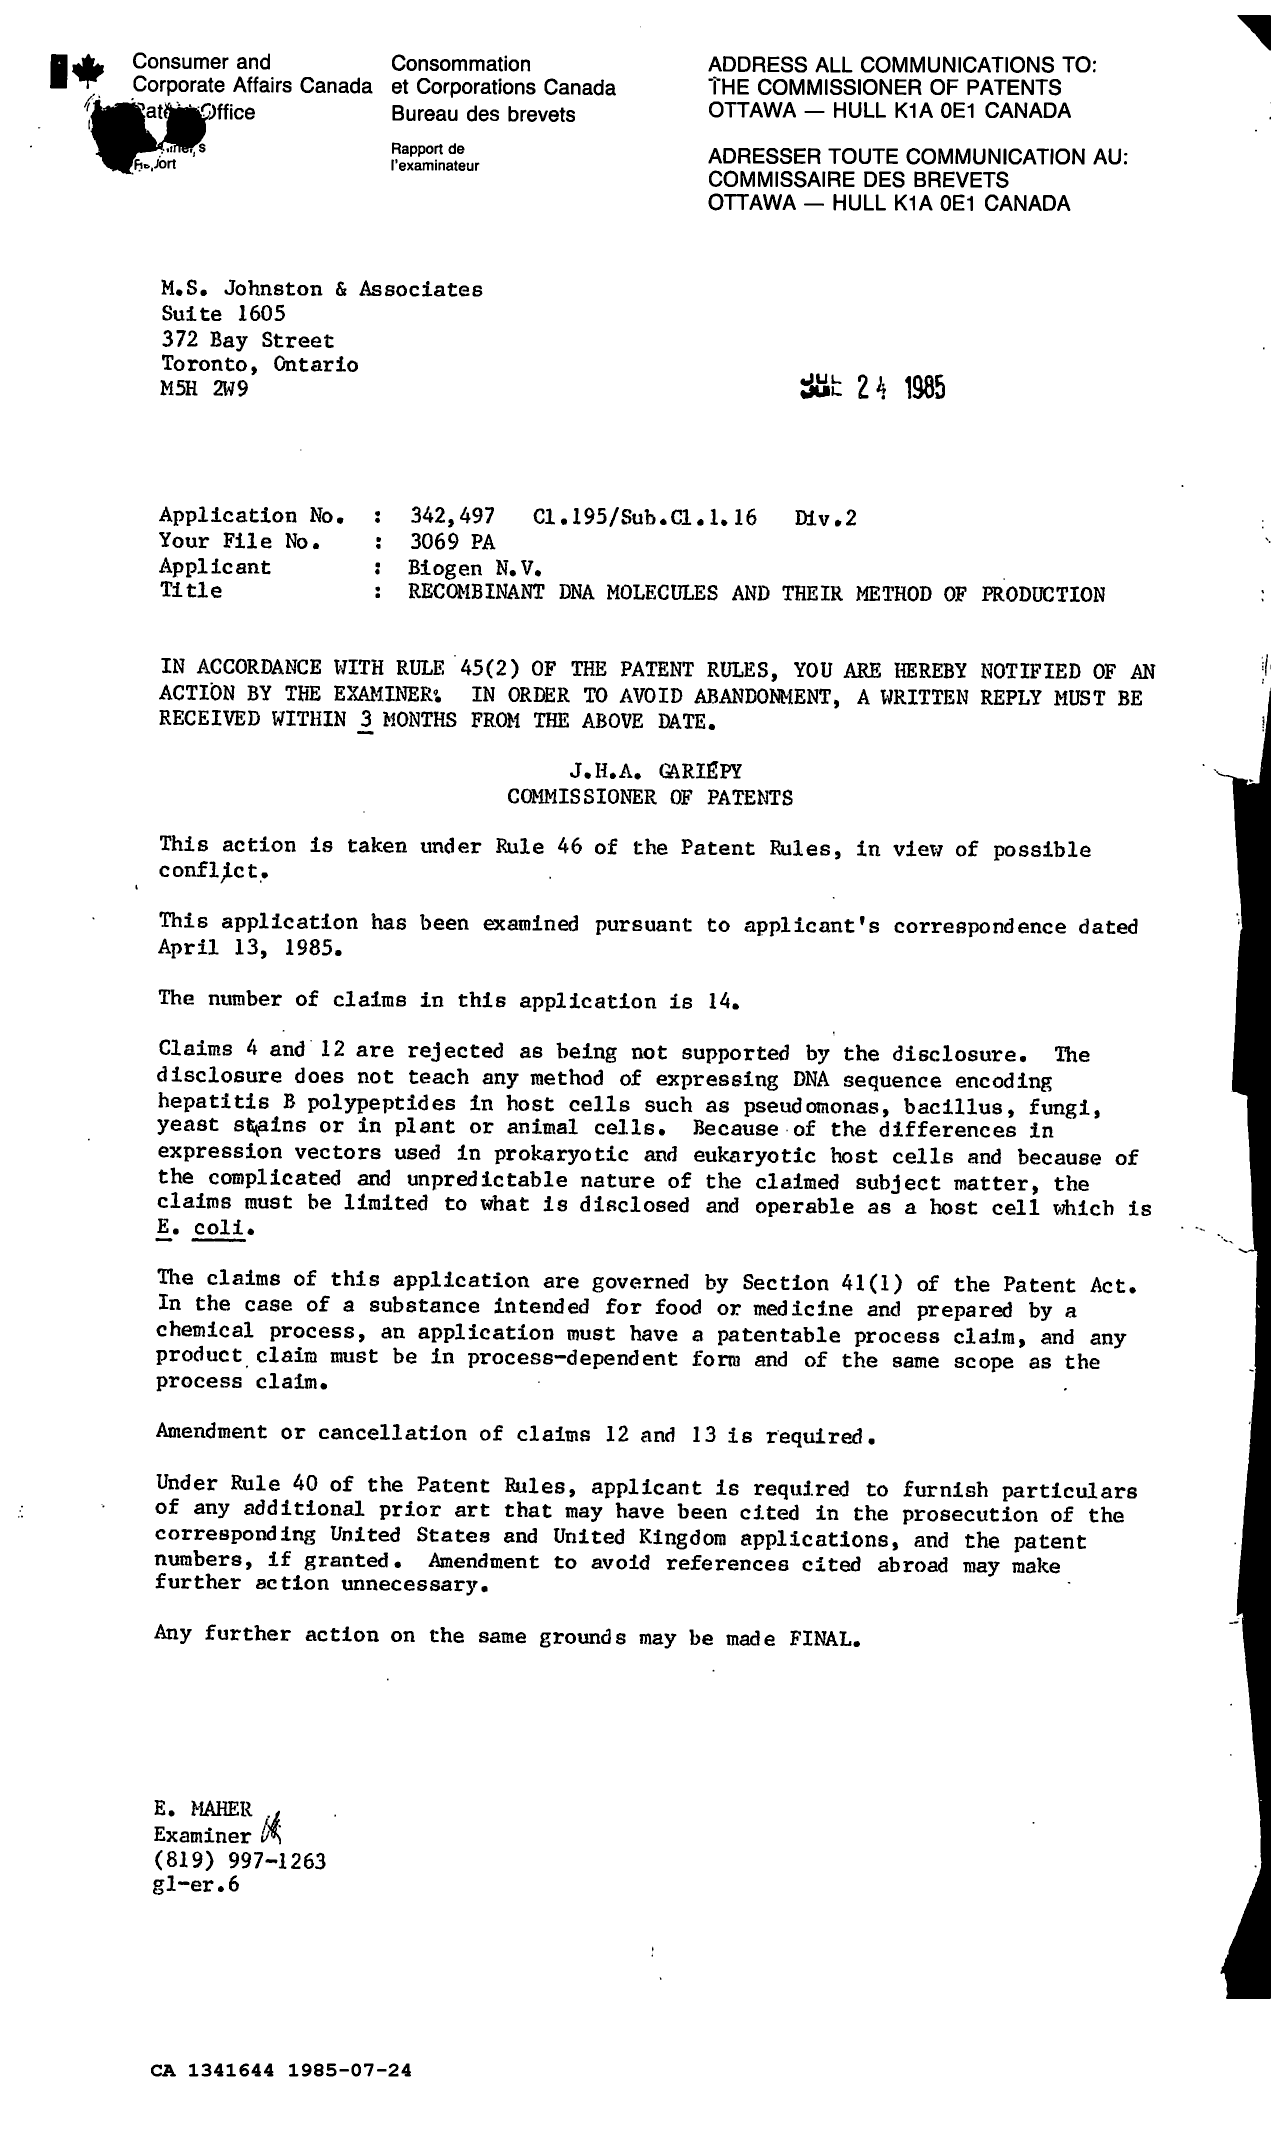 Document de brevet canadien 1341644. Modification 19850724. Image 1 de 1